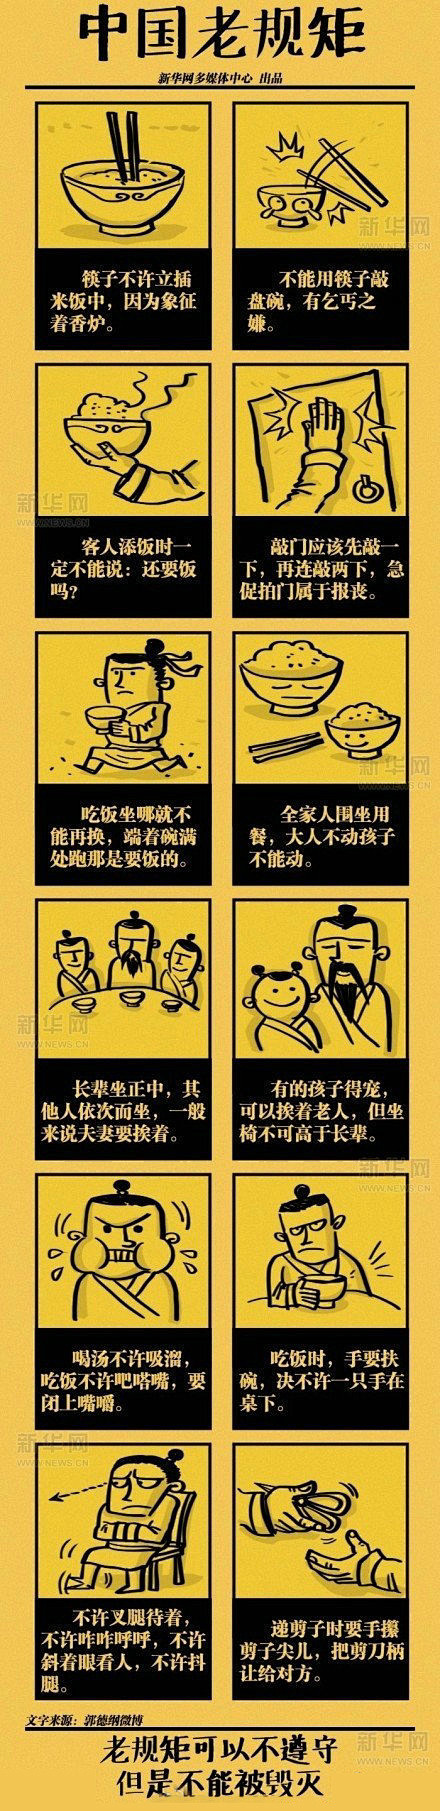 中国传统礼仪规矩